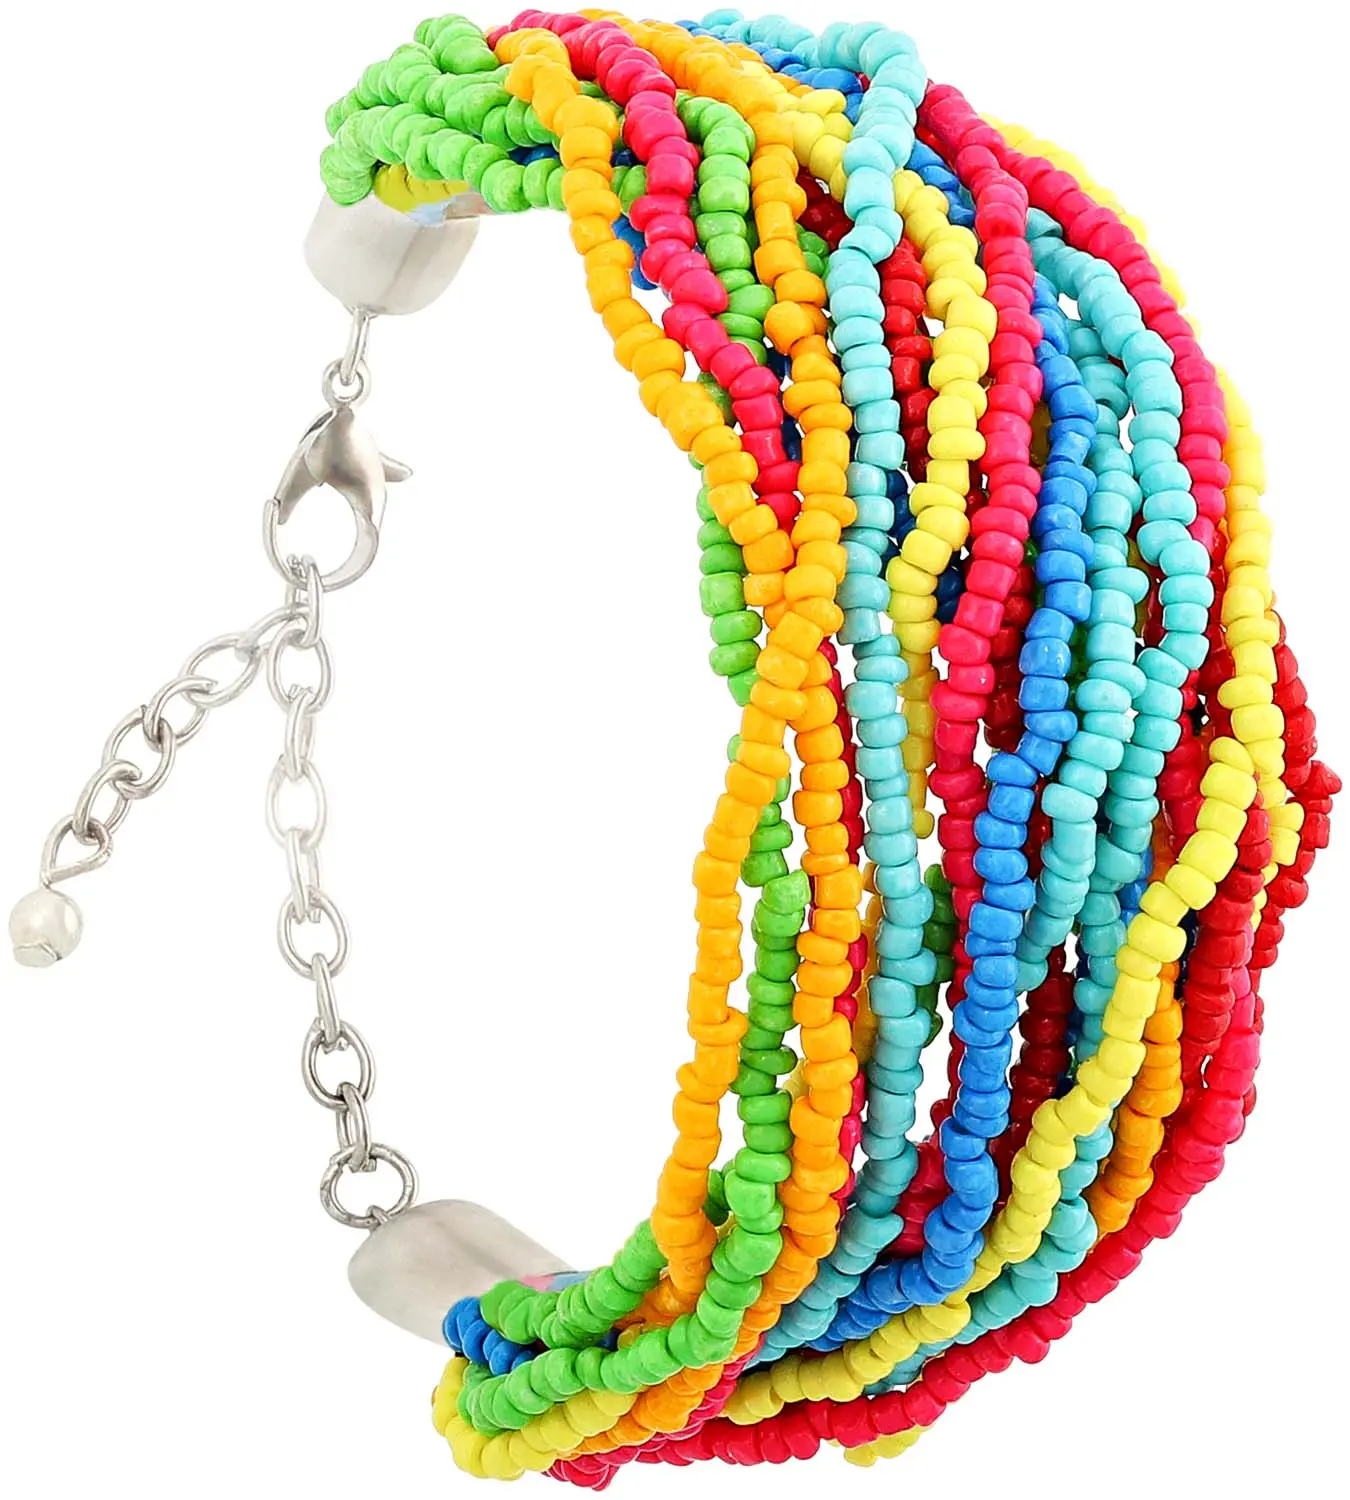 Braccialetto - Multicolored Beads